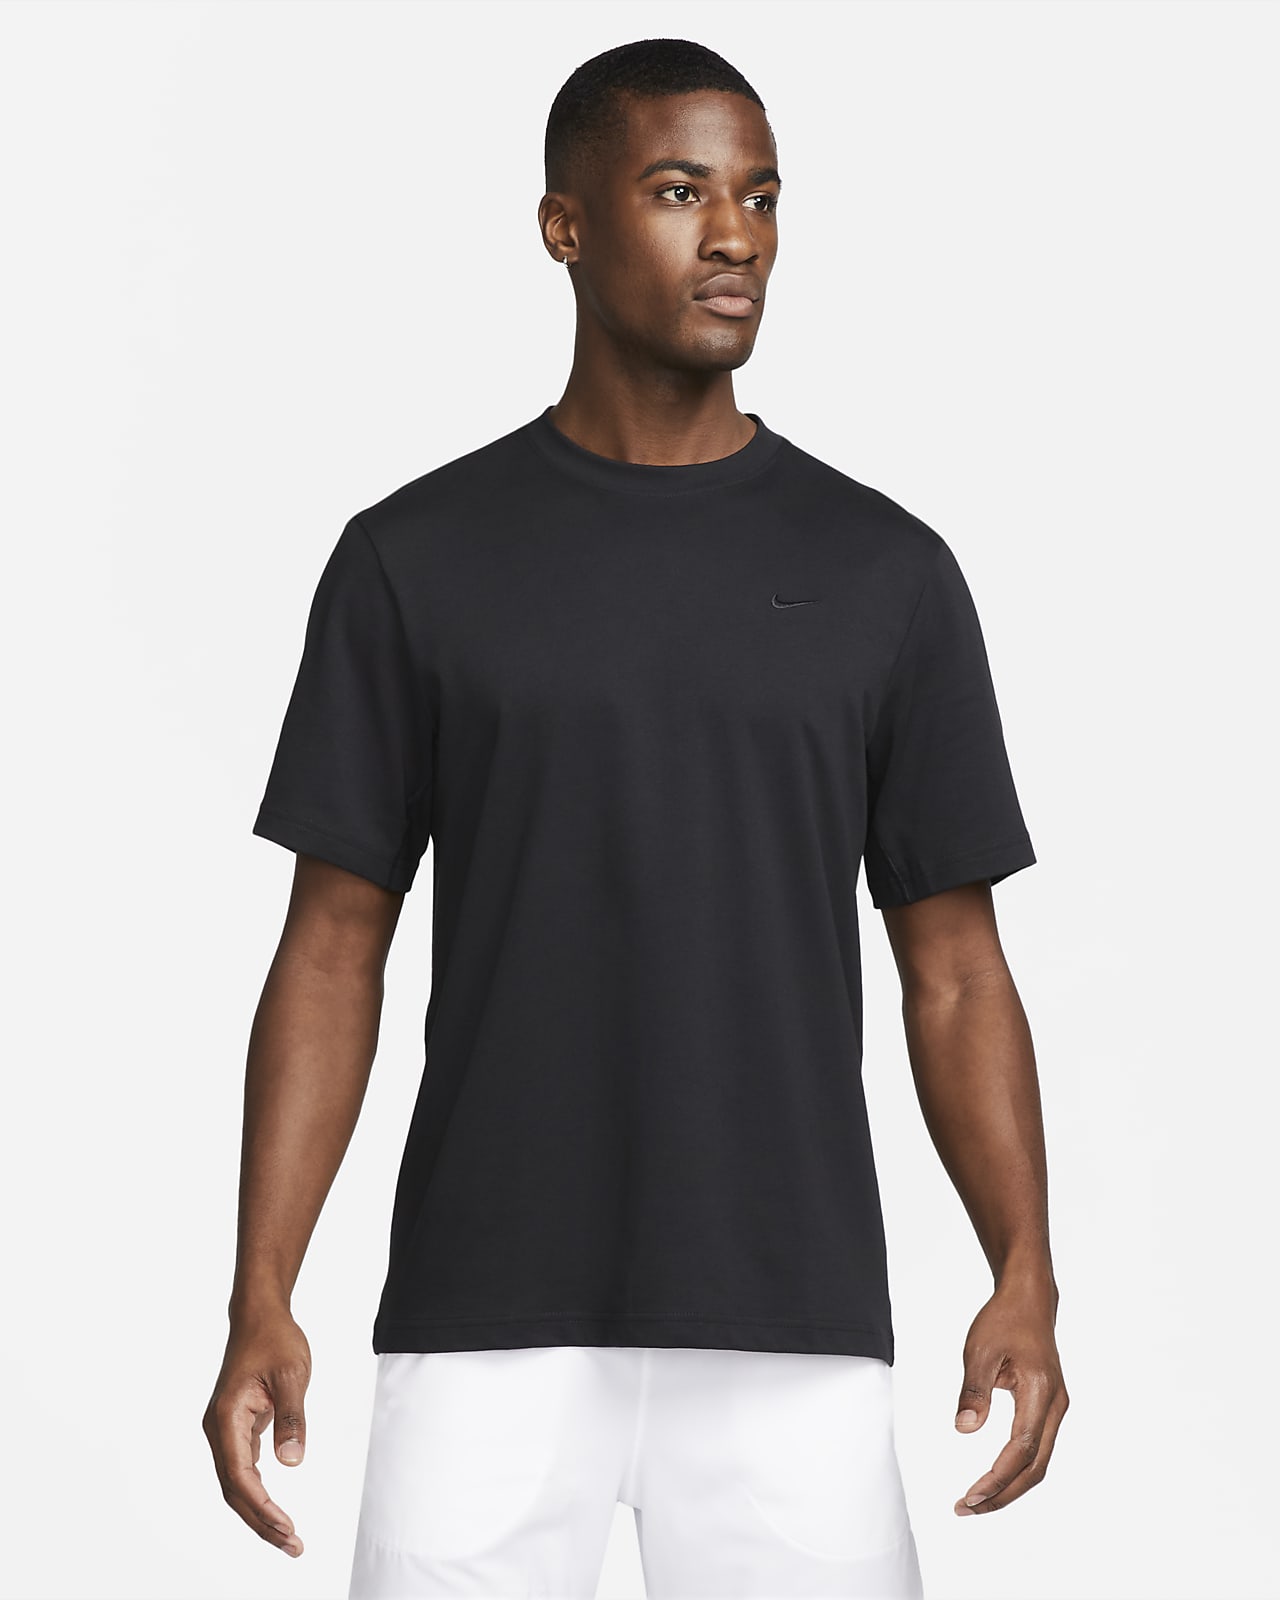 Tee shirt manches courtes blanc Nike